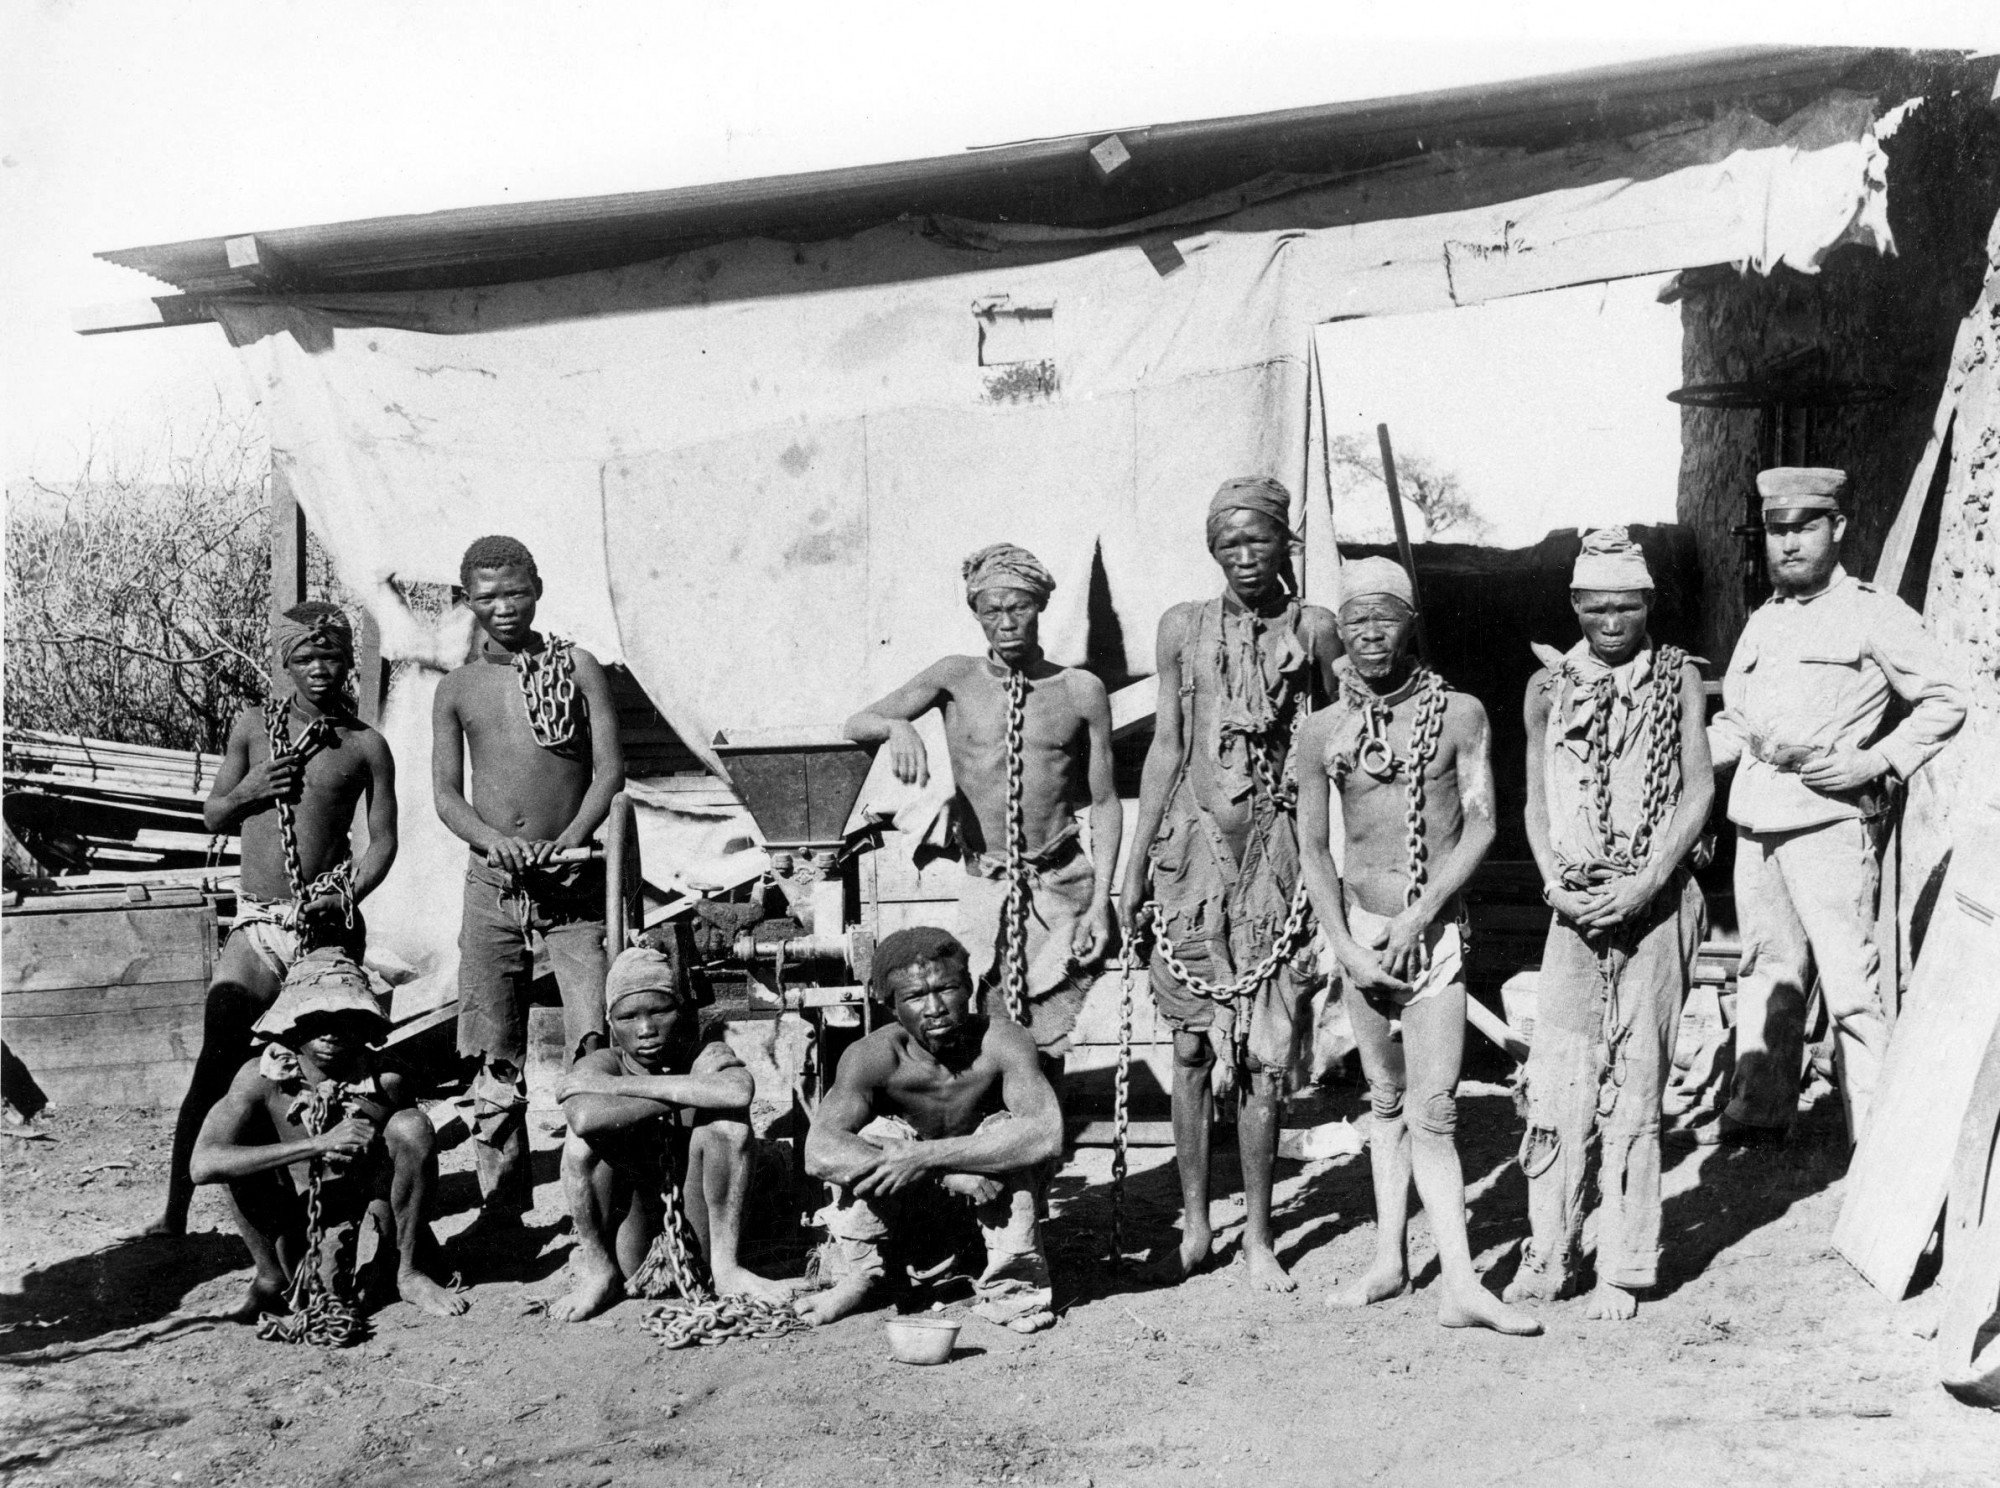 Az őslakos namíbiai népcsoportok a 20. század elején elkobzott földjeik visszaadását követelik